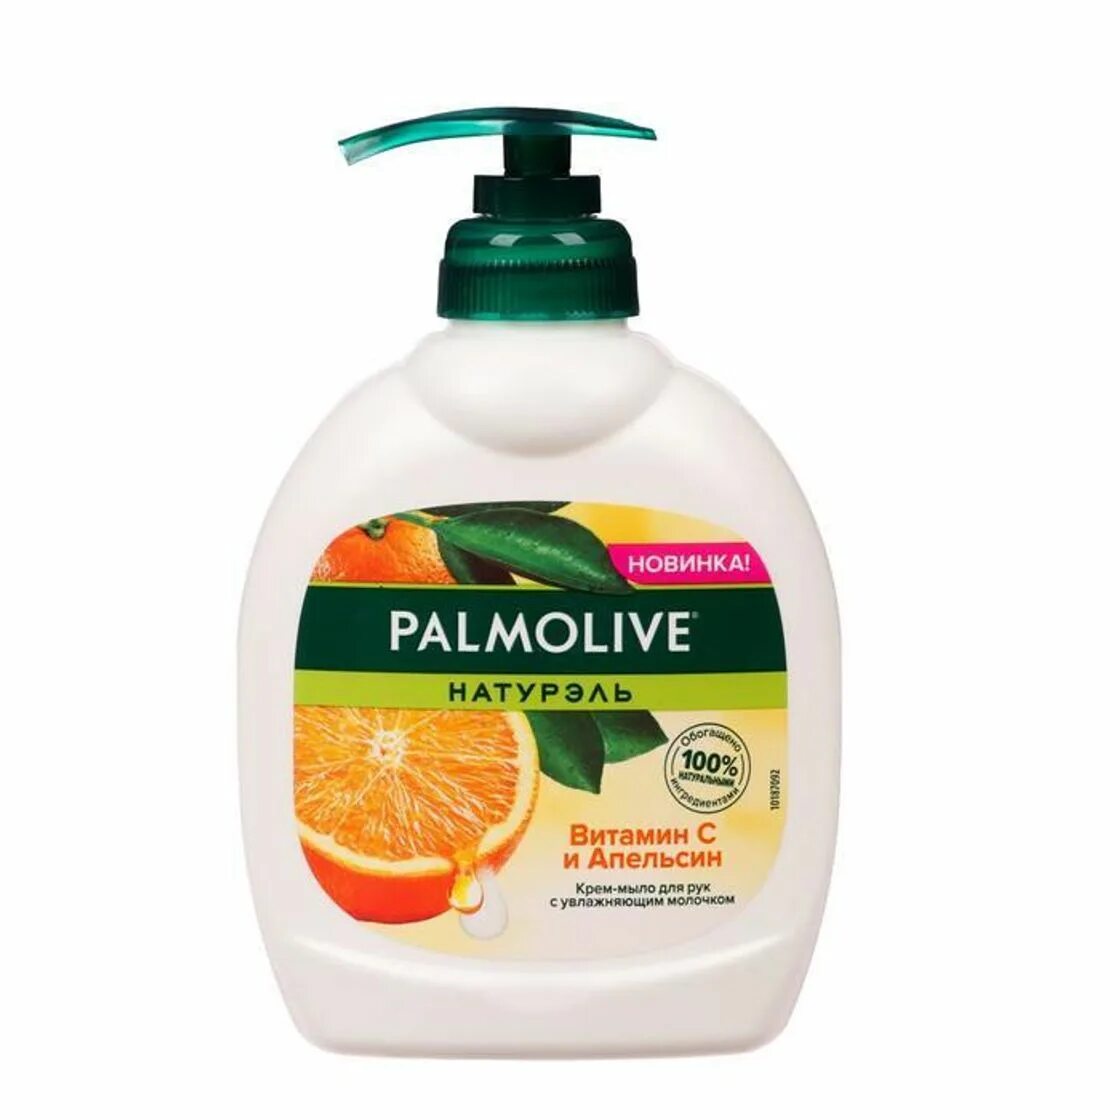 Крем мыло жидкое купить. Palmolive крем-мыло жидкое Натурэль витамин с и апельсин, 300 мл. Жидкое мыло Palmolive 300 мл. Palmolive жидкое мыло роскошная мягкость витамин с и апельсин, 300мл.